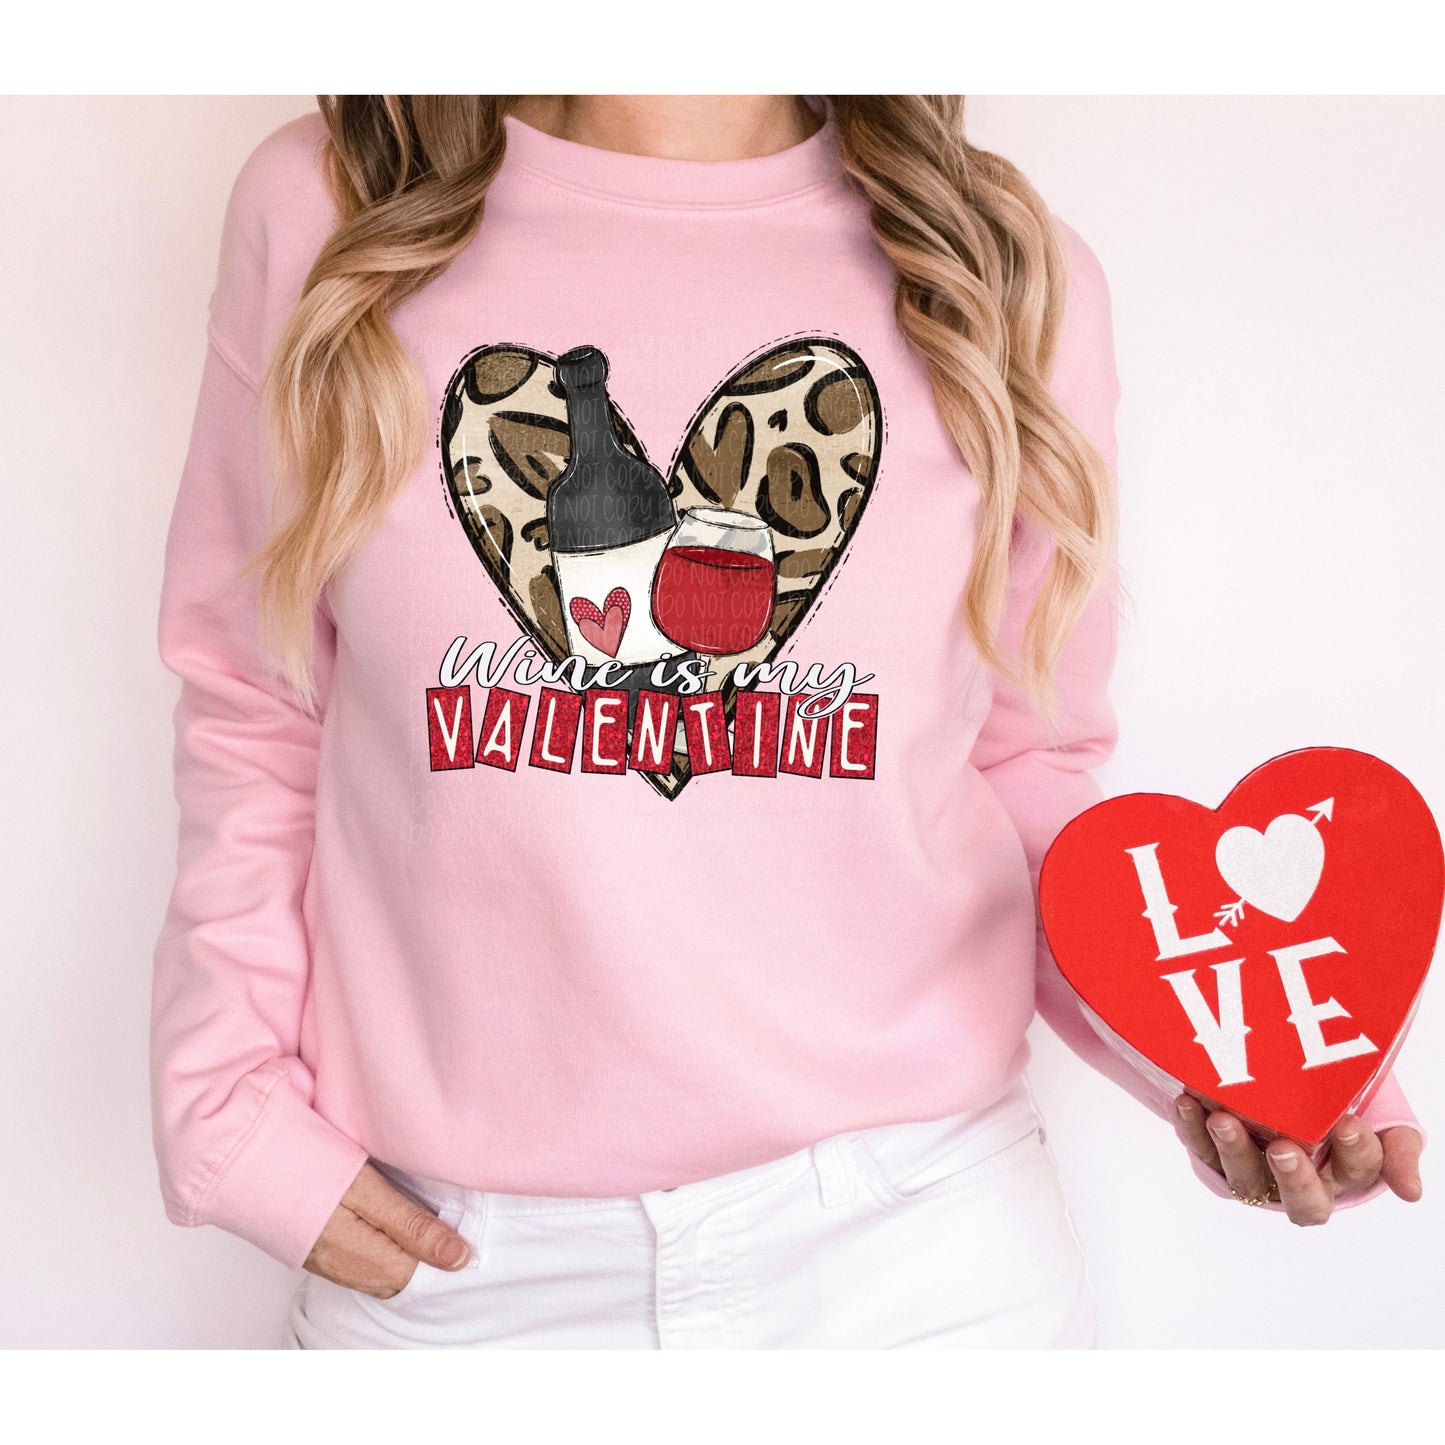 Wine is My Valentine Sweatshirt